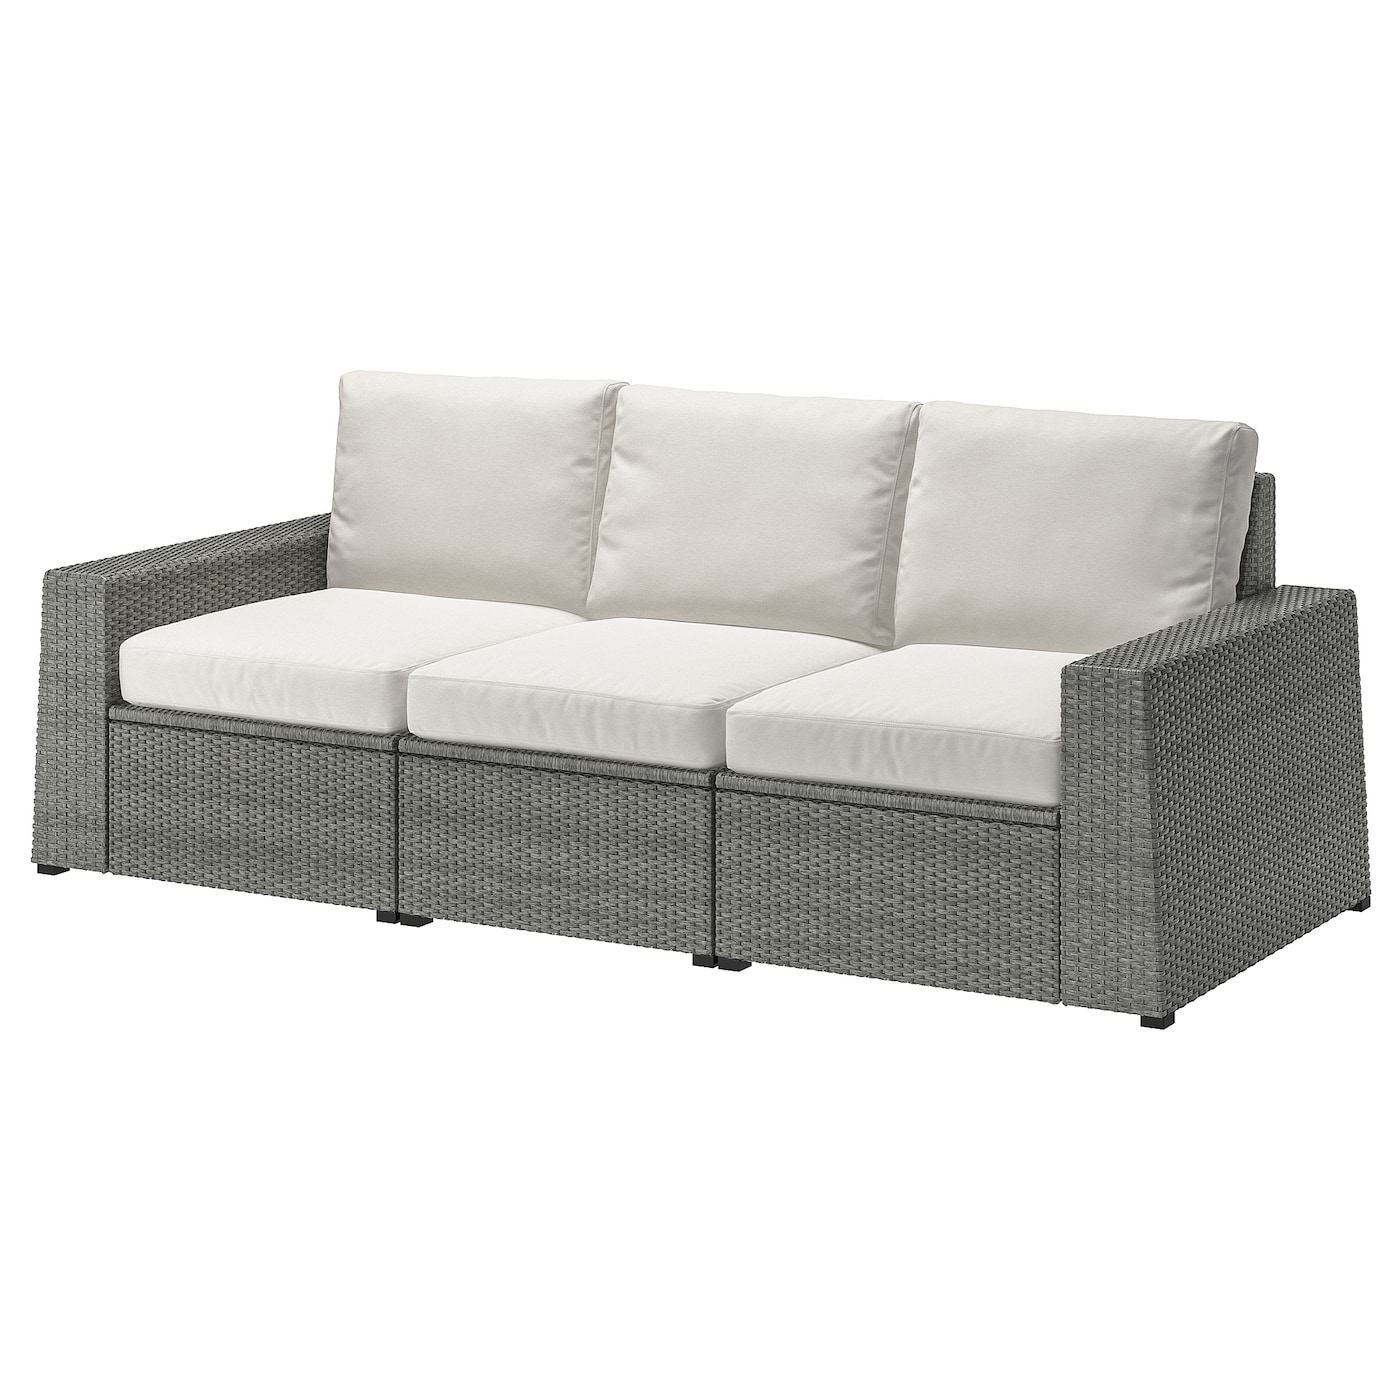 3-местный модульный диван - IKEA SOLLERÖN/SOLLERON/СОЛЛЕРОН ИКЕА, 88х82х223 см, белый/серый